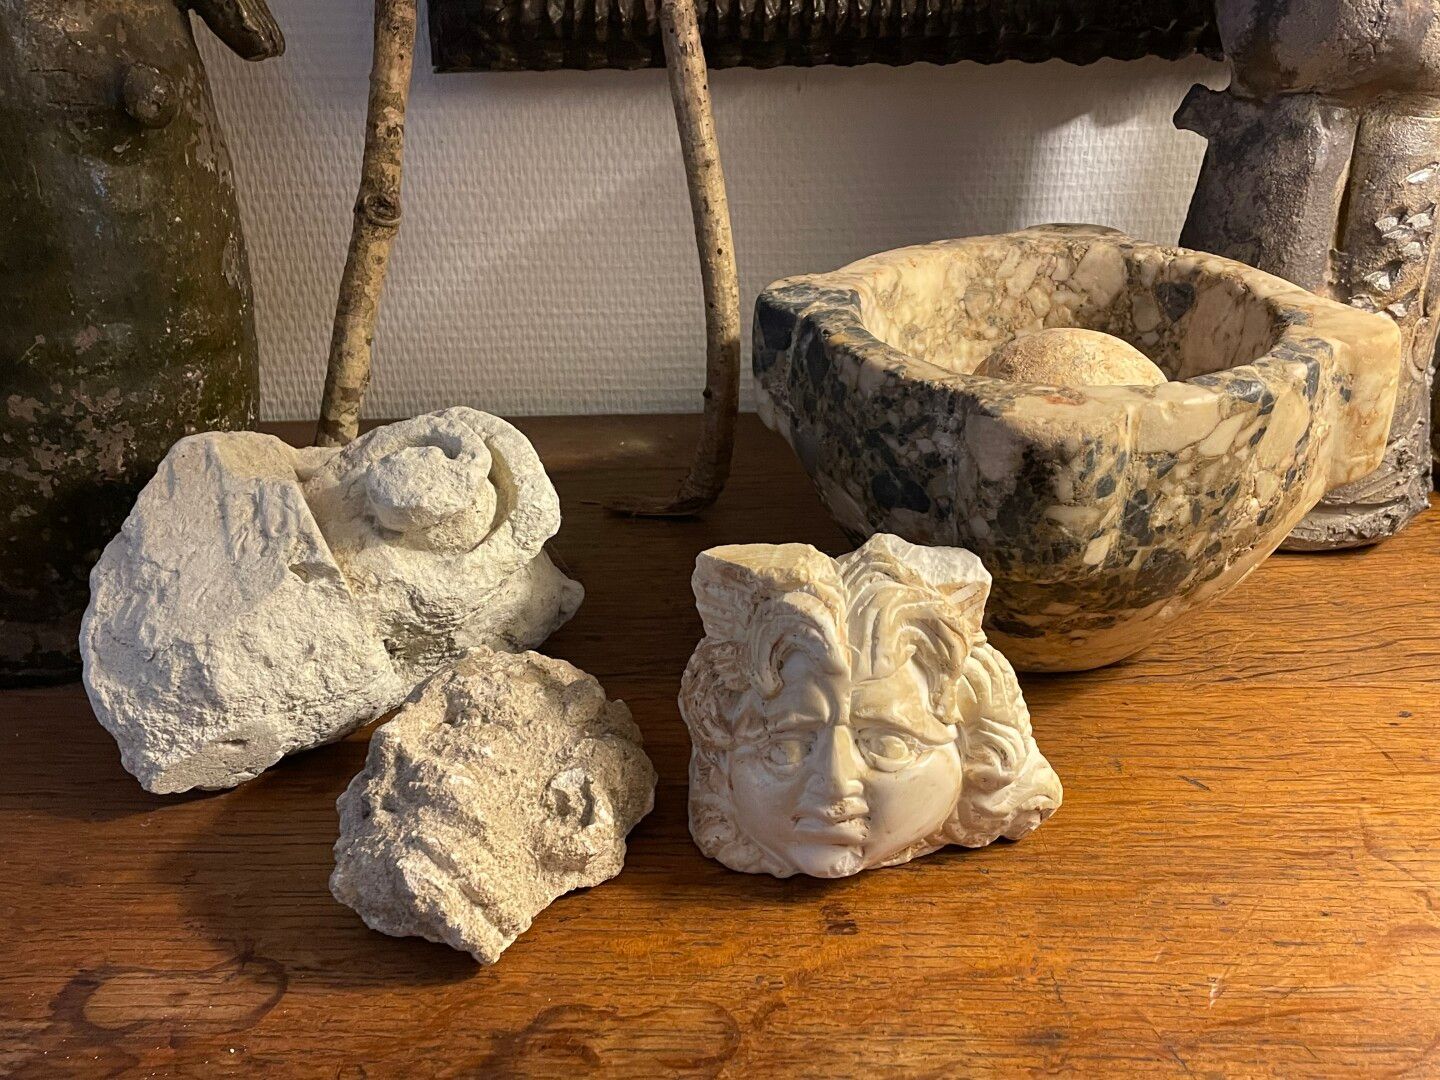 Null Mortero de mármol y cuatro piedras talladas erosionadas: voluta, caras.